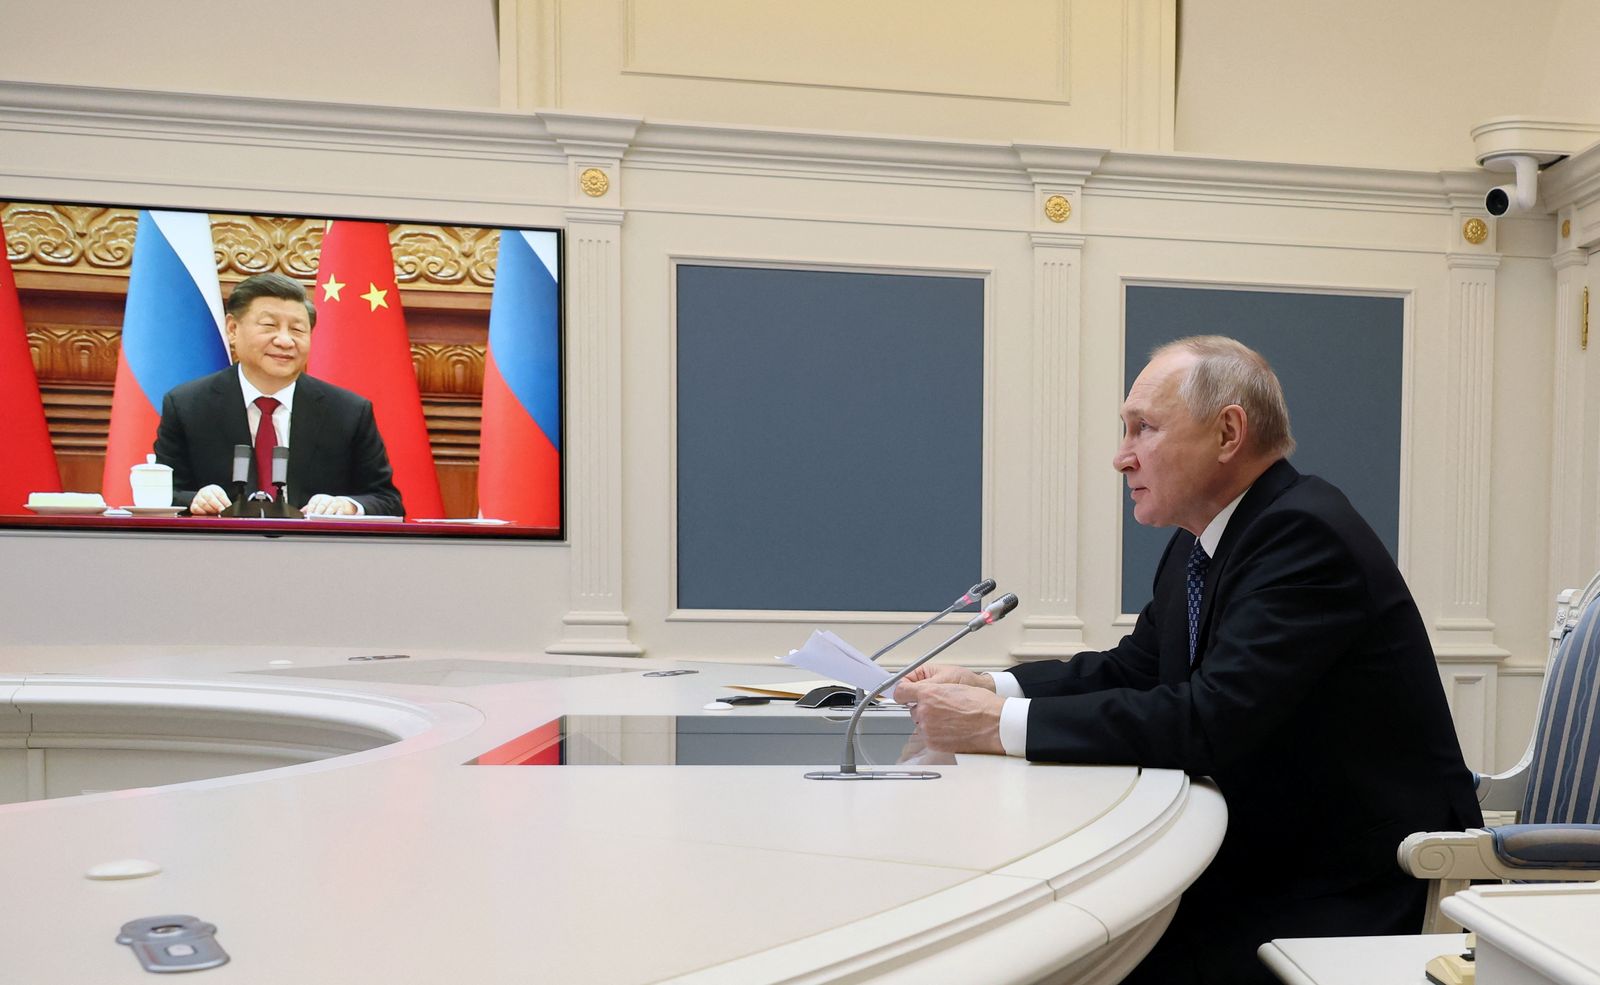 الرئيس الروسي فلاديمير بوتين يجري محادثات مع نظيره الصيني شي جين بينج عبر الفيديو، 30 ديسمبر 2022 - via REUTERS